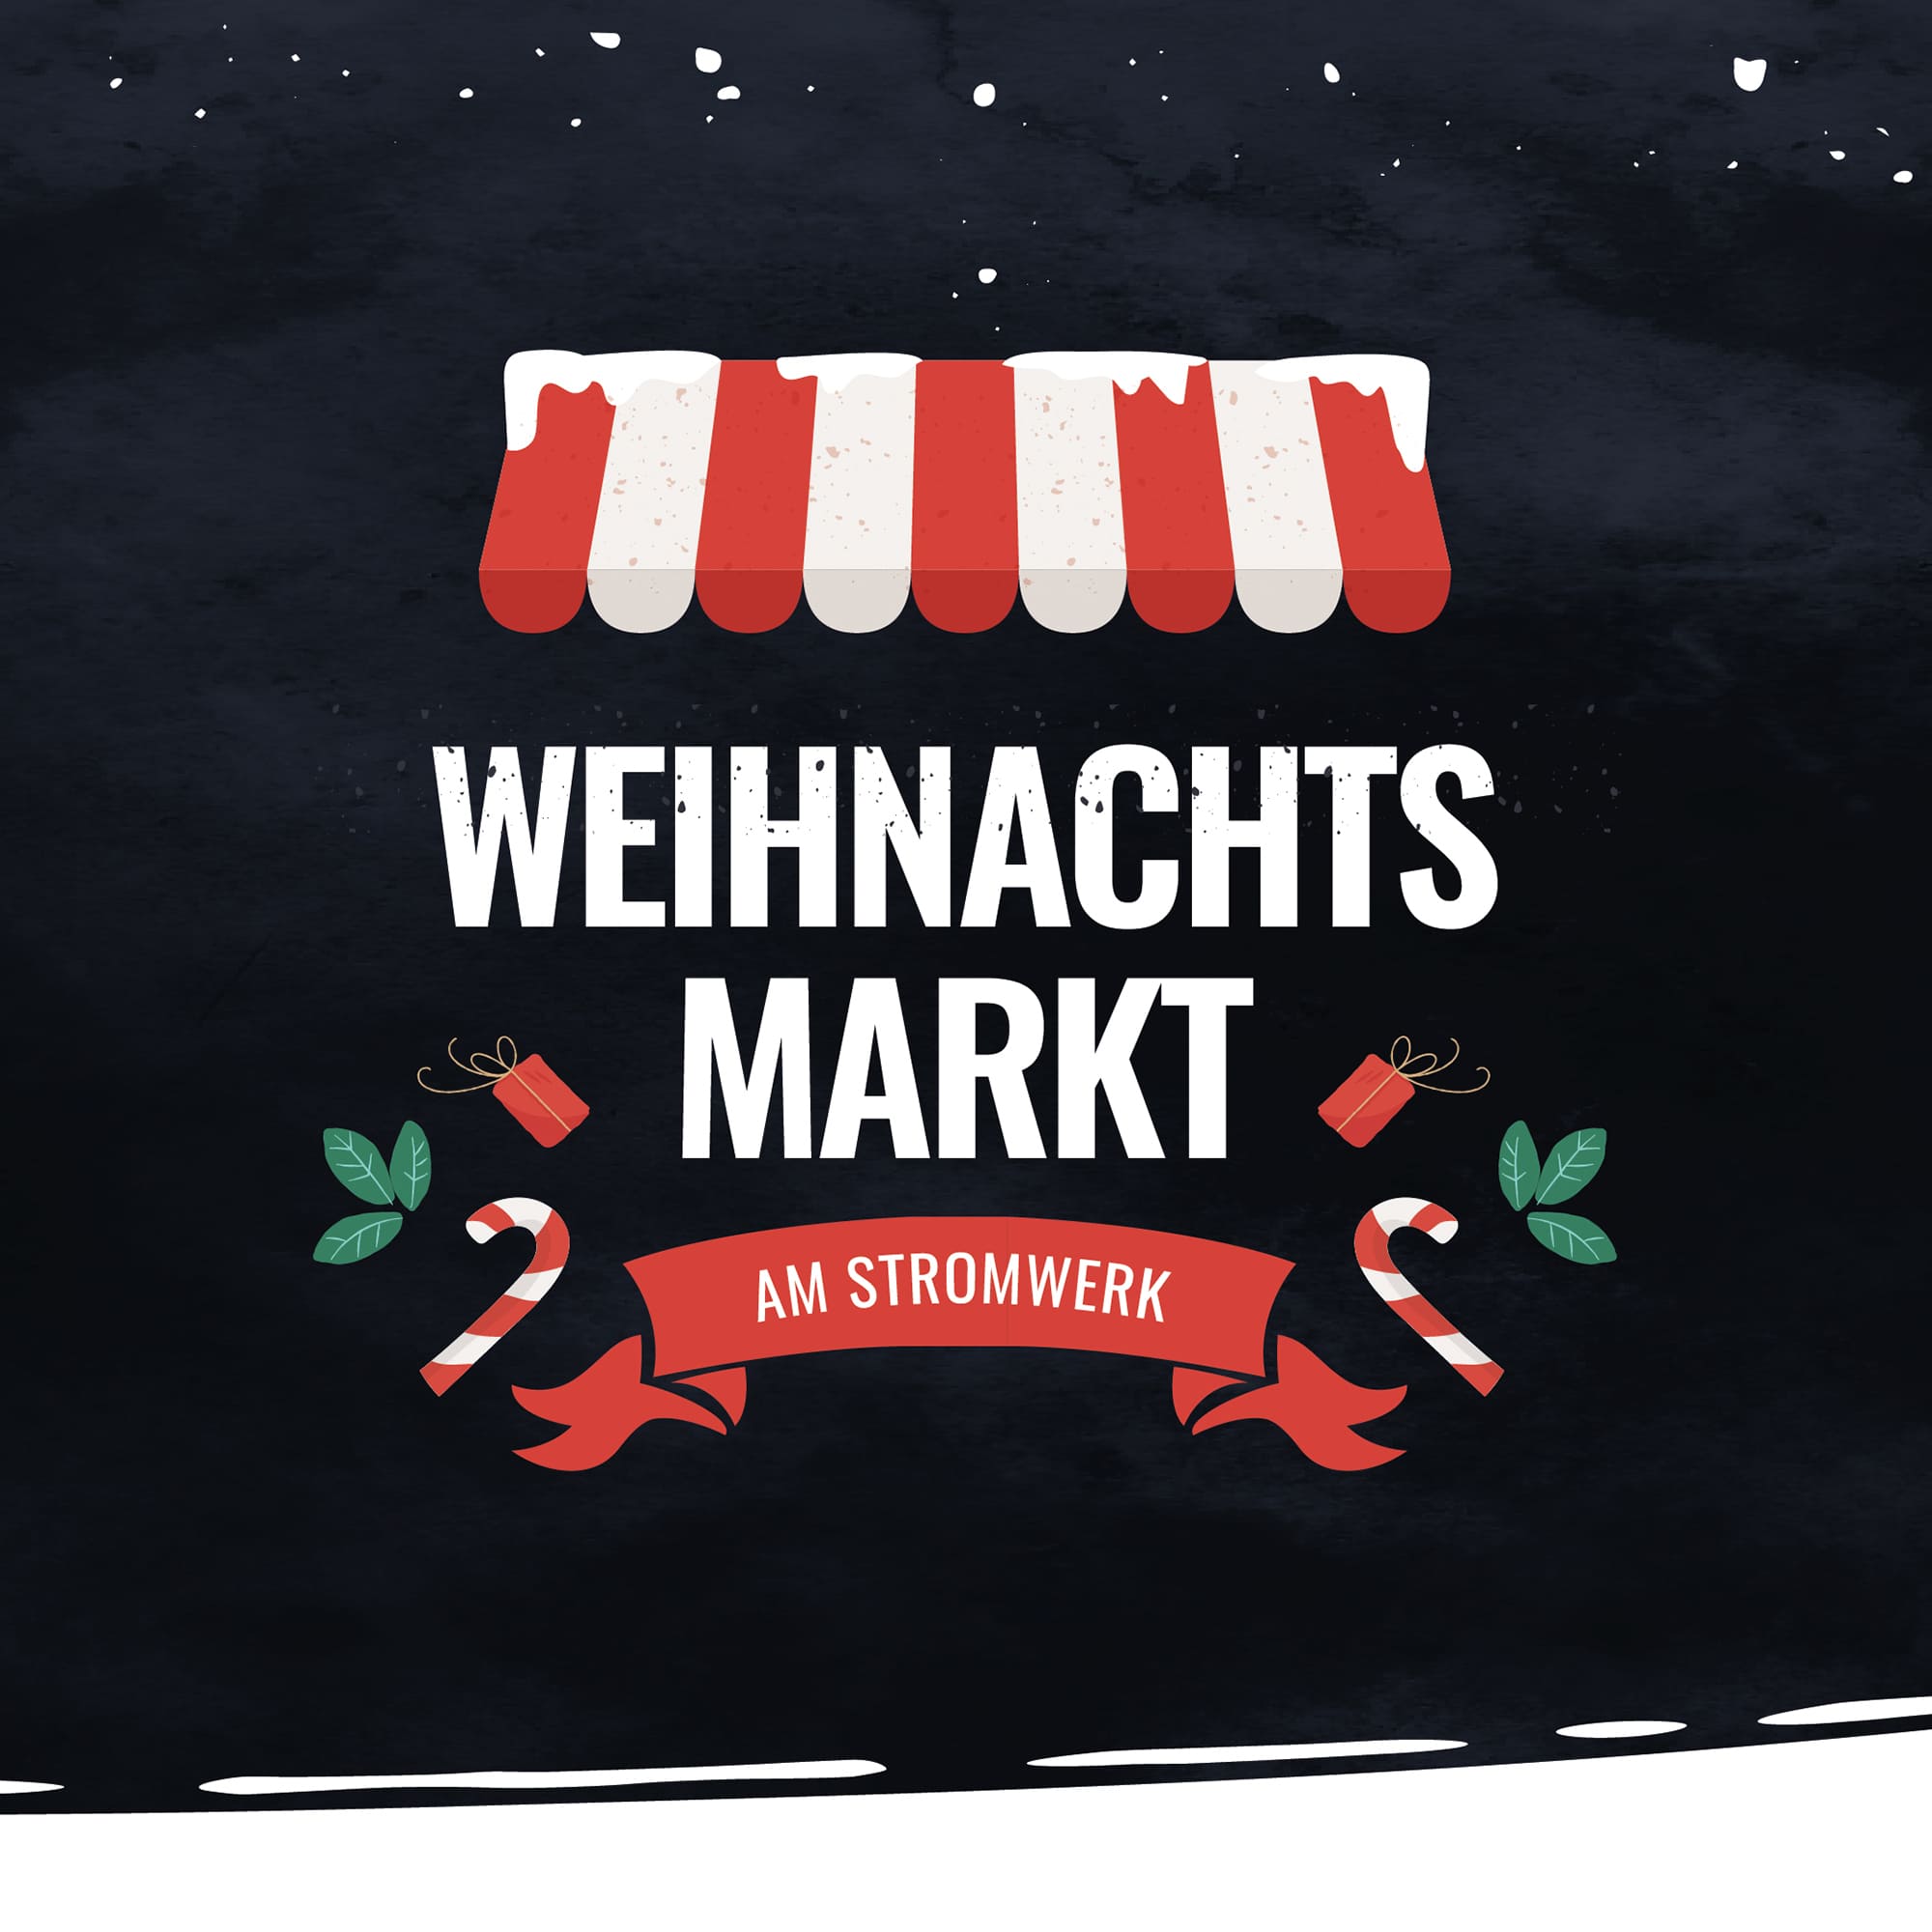 (c) Weihnachtsmarkt-stromwerk.de